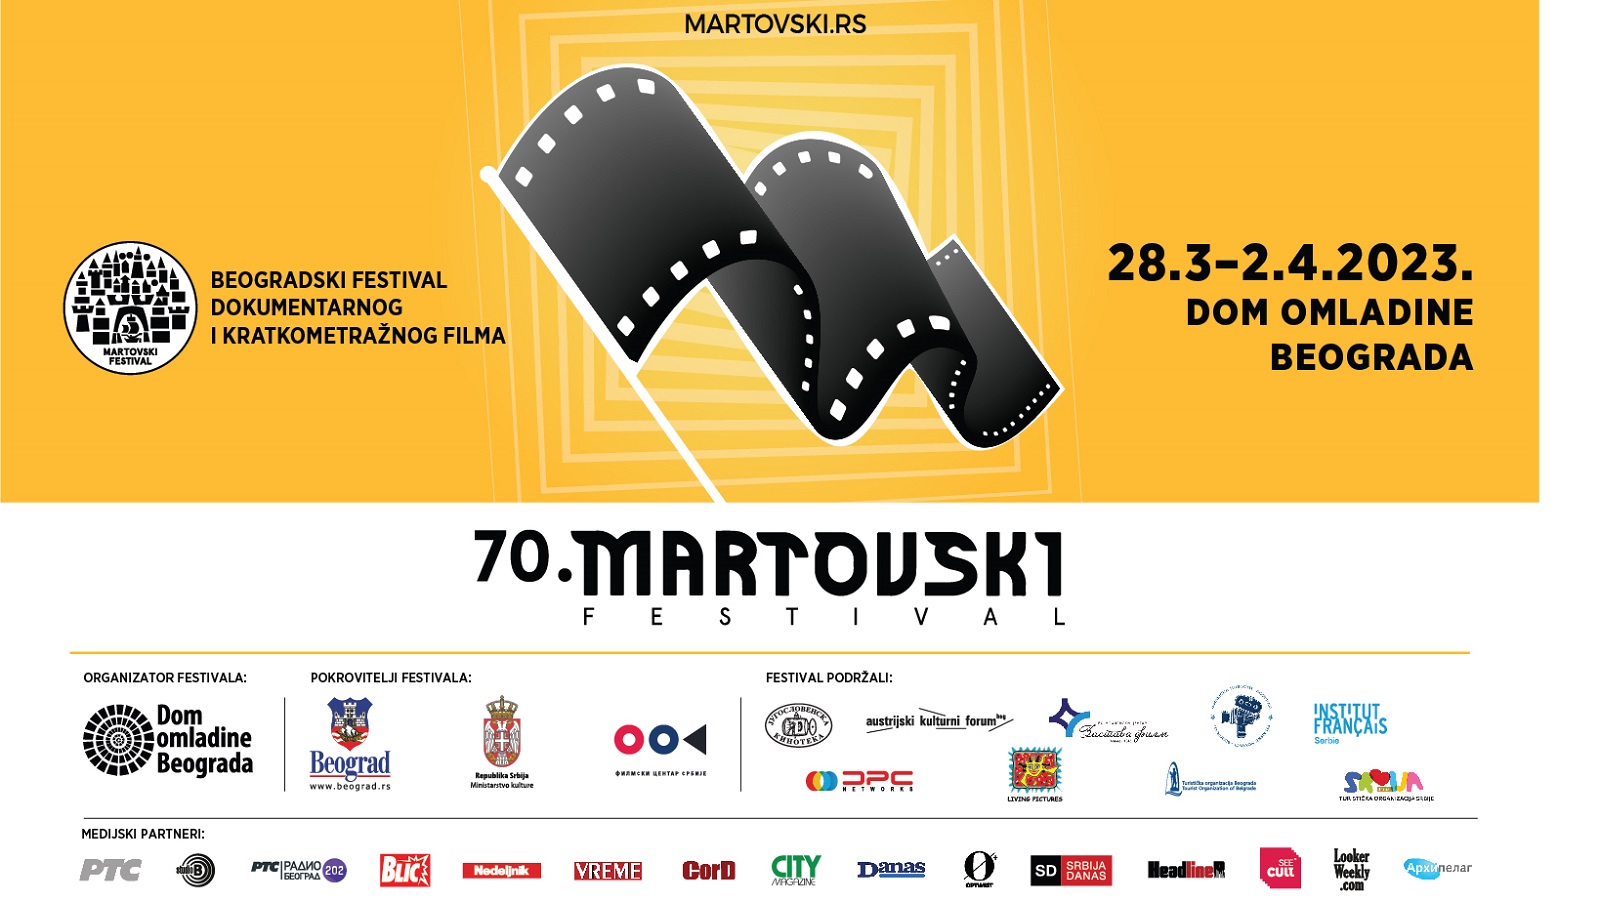 70. Martovski festival od 28. marta do 2. aprila u Domu omladine Beograda